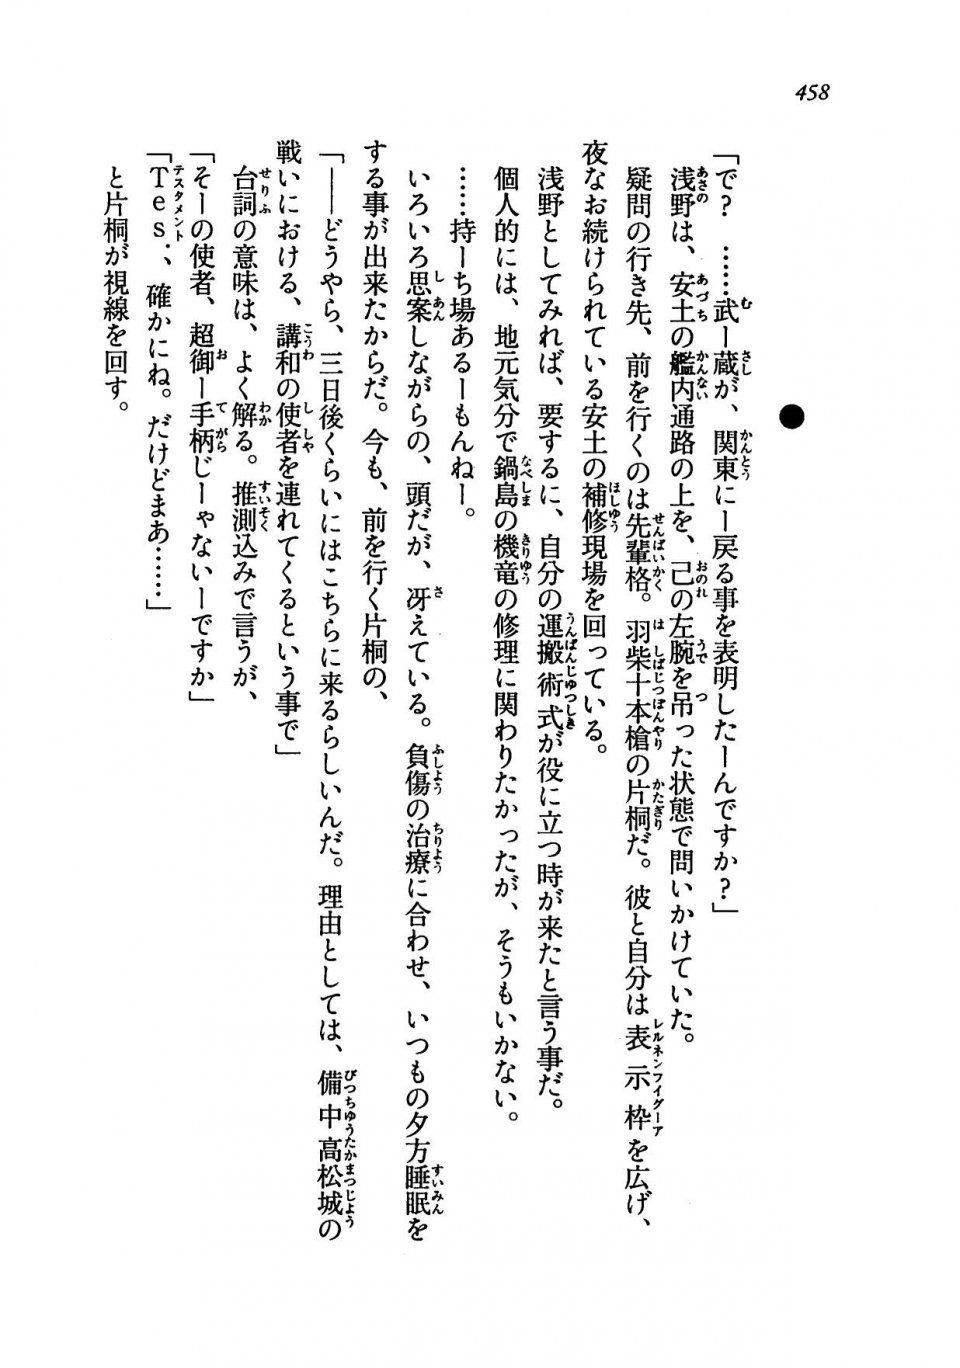 Kyoukai Senjou no Horizon LN Vol 19(8A) - Photo #458